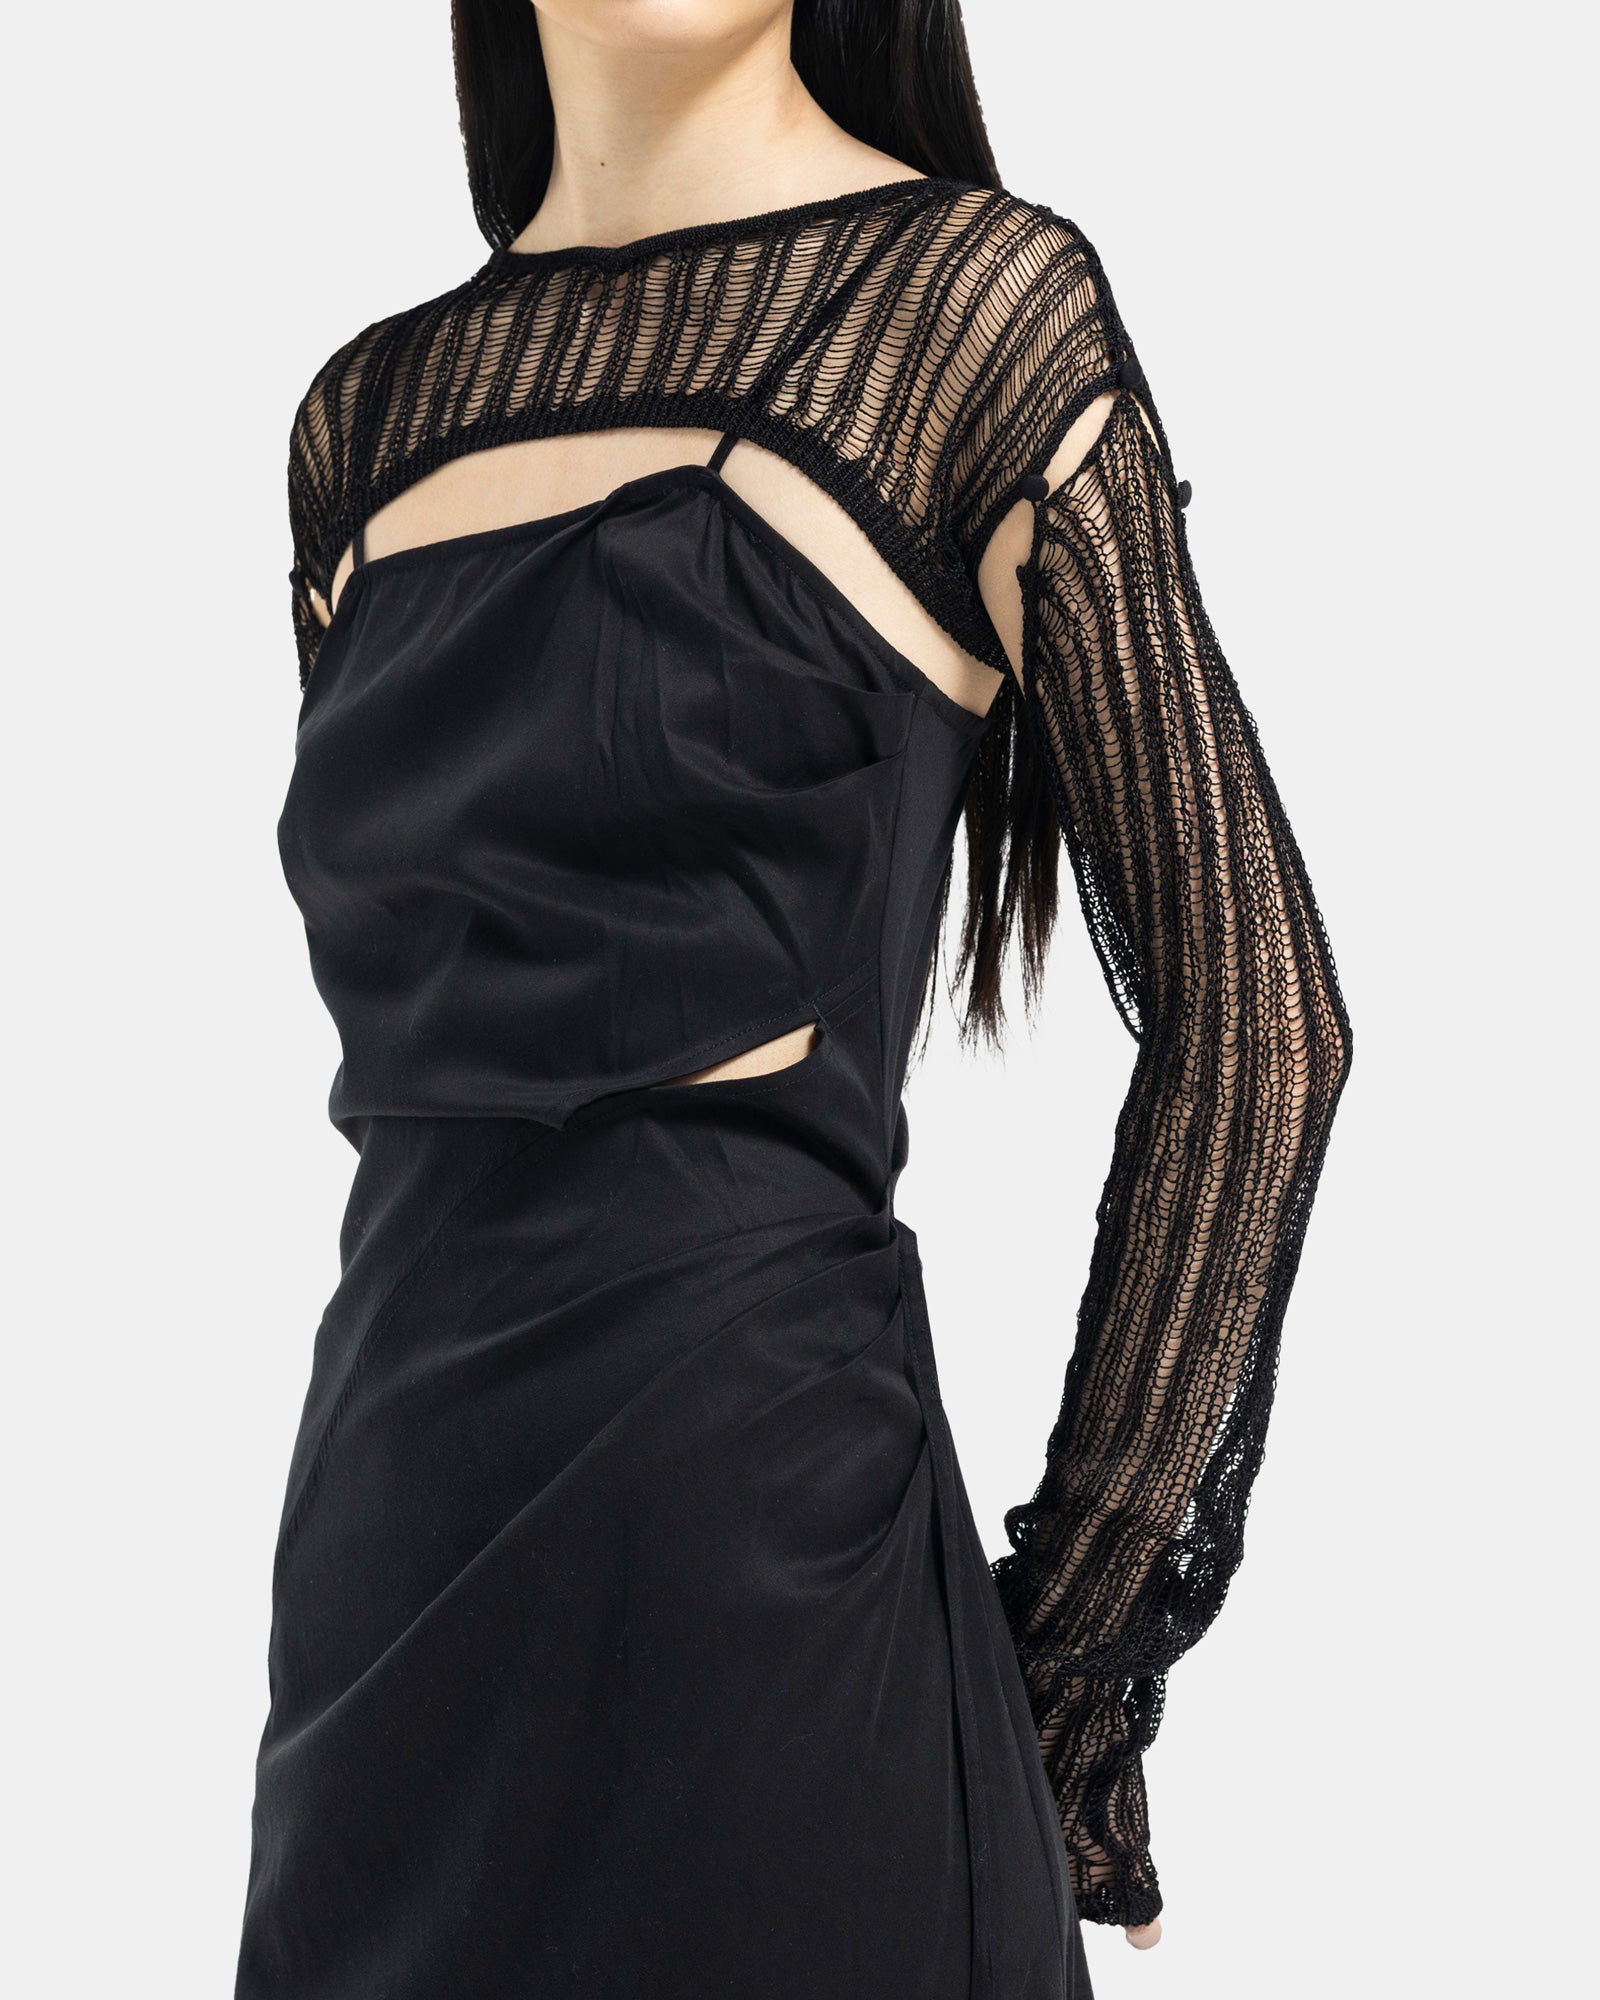 Female model wearing Professor.E black ruched slip dress on white background